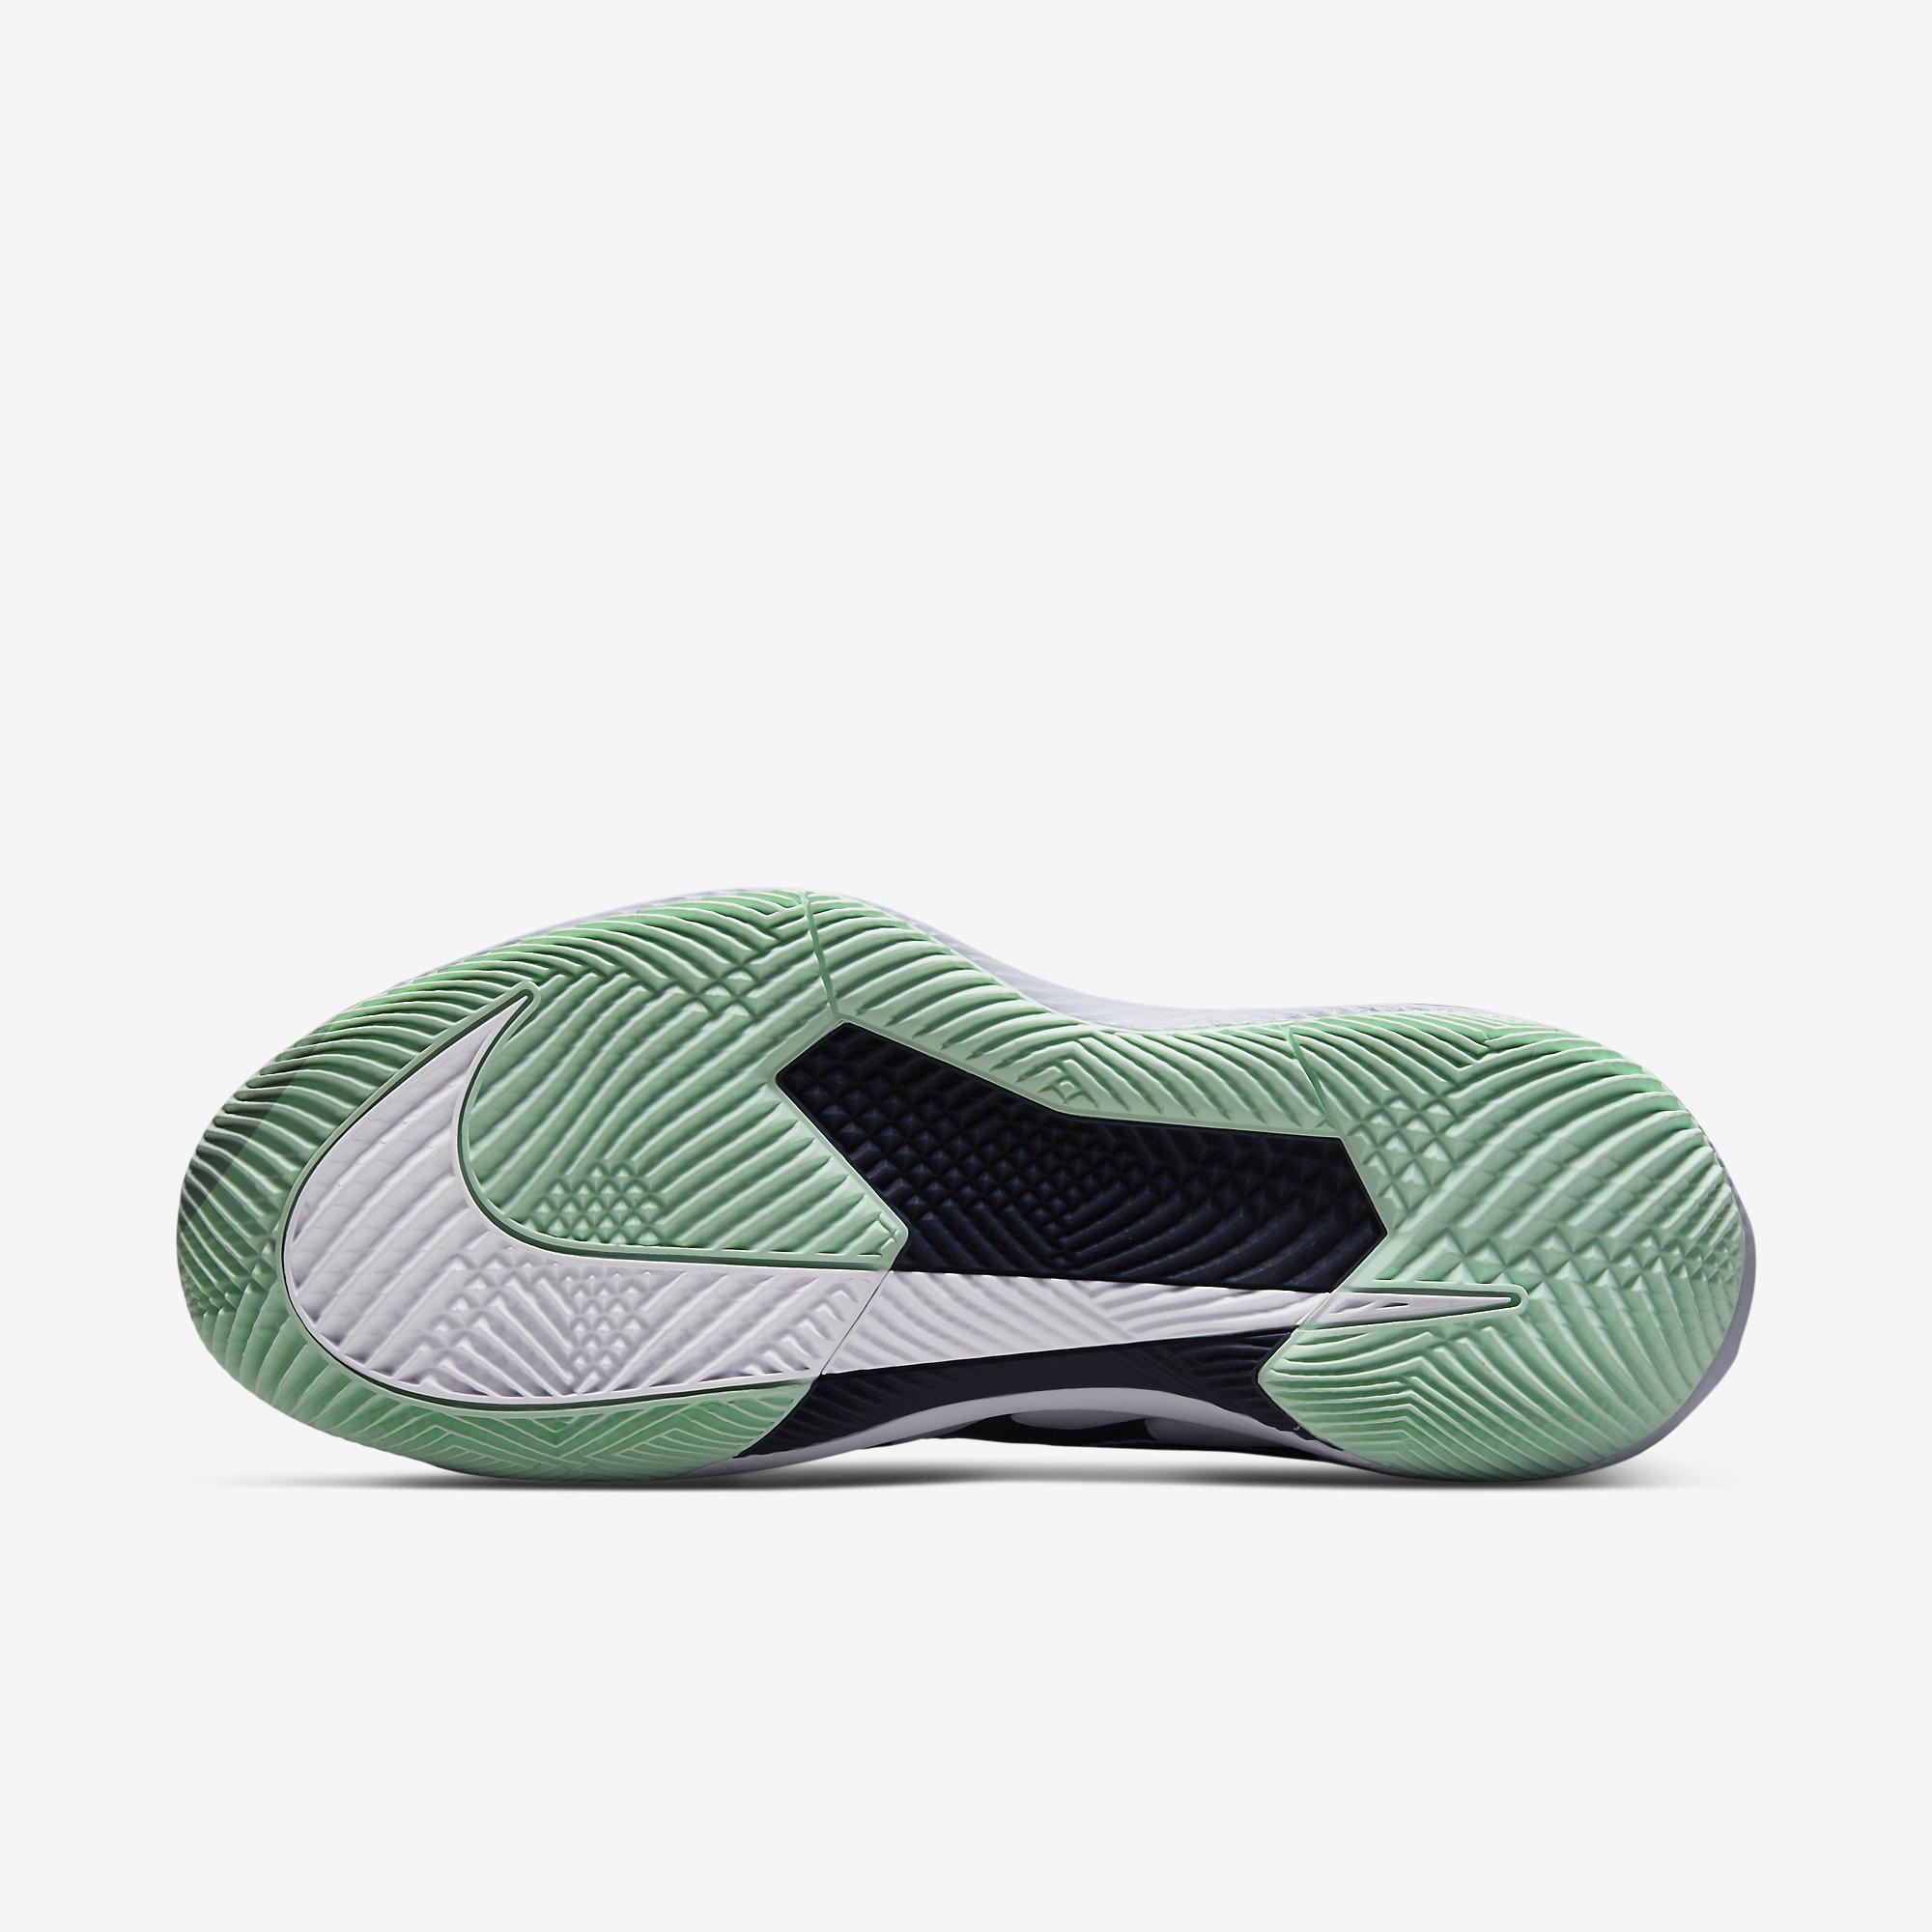 Nike Womens Air Zoom Vapor Pro Tennis Shoes - Obsidian/Mint Foam ...